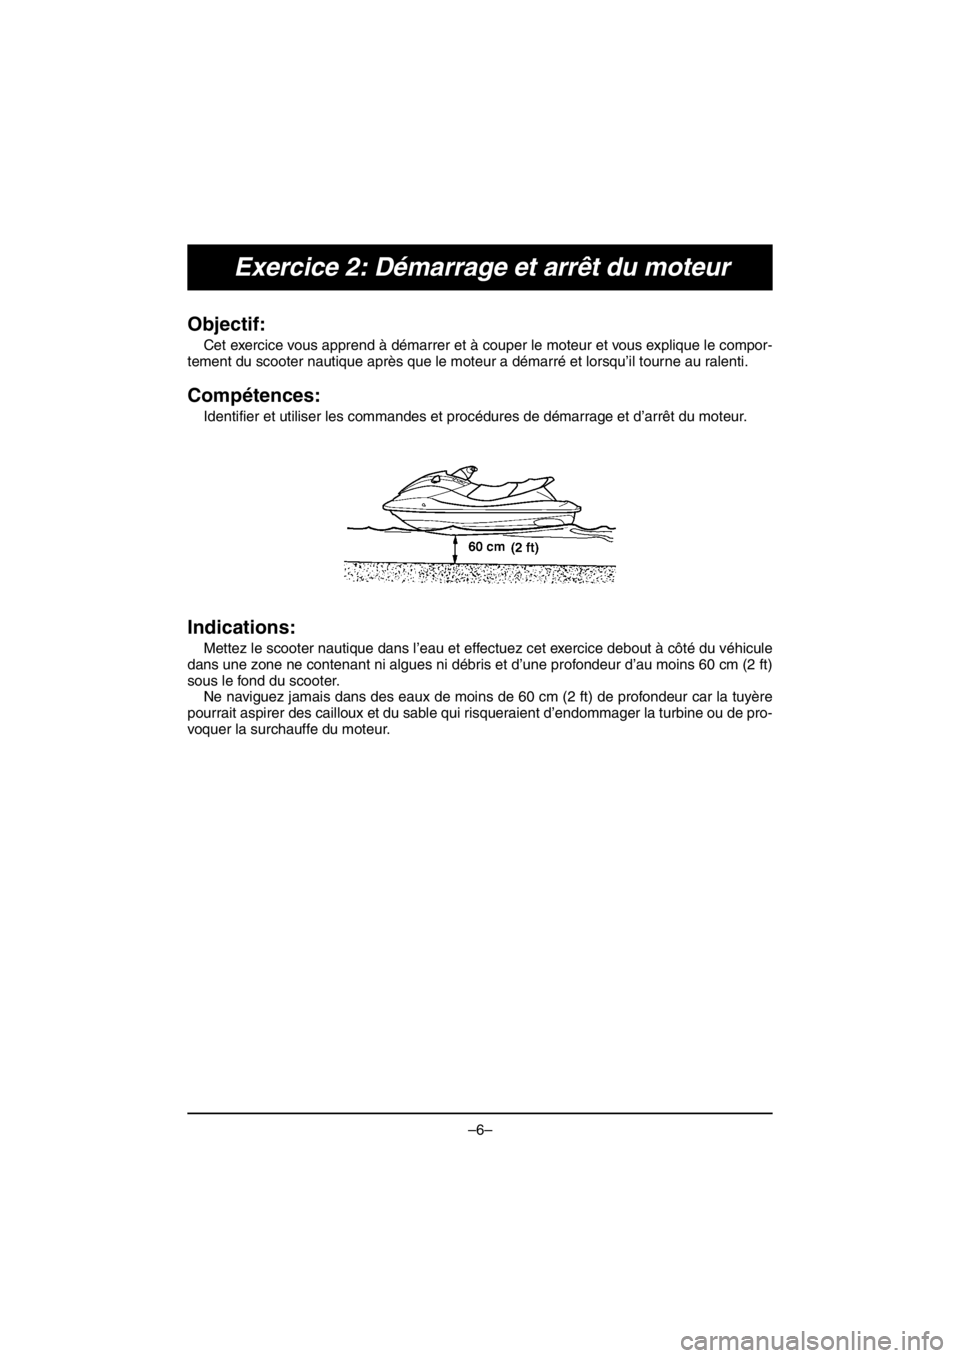 YAMAHA V1 2016  Owners Manual –6–
Exercice 2: Démarrage et arrêt du moteur
Objectif: 
Cet exercice vous apprend à démarrer et à couper le moteur et vous explique le compor-
tement du scooter nautique après que le moteur 